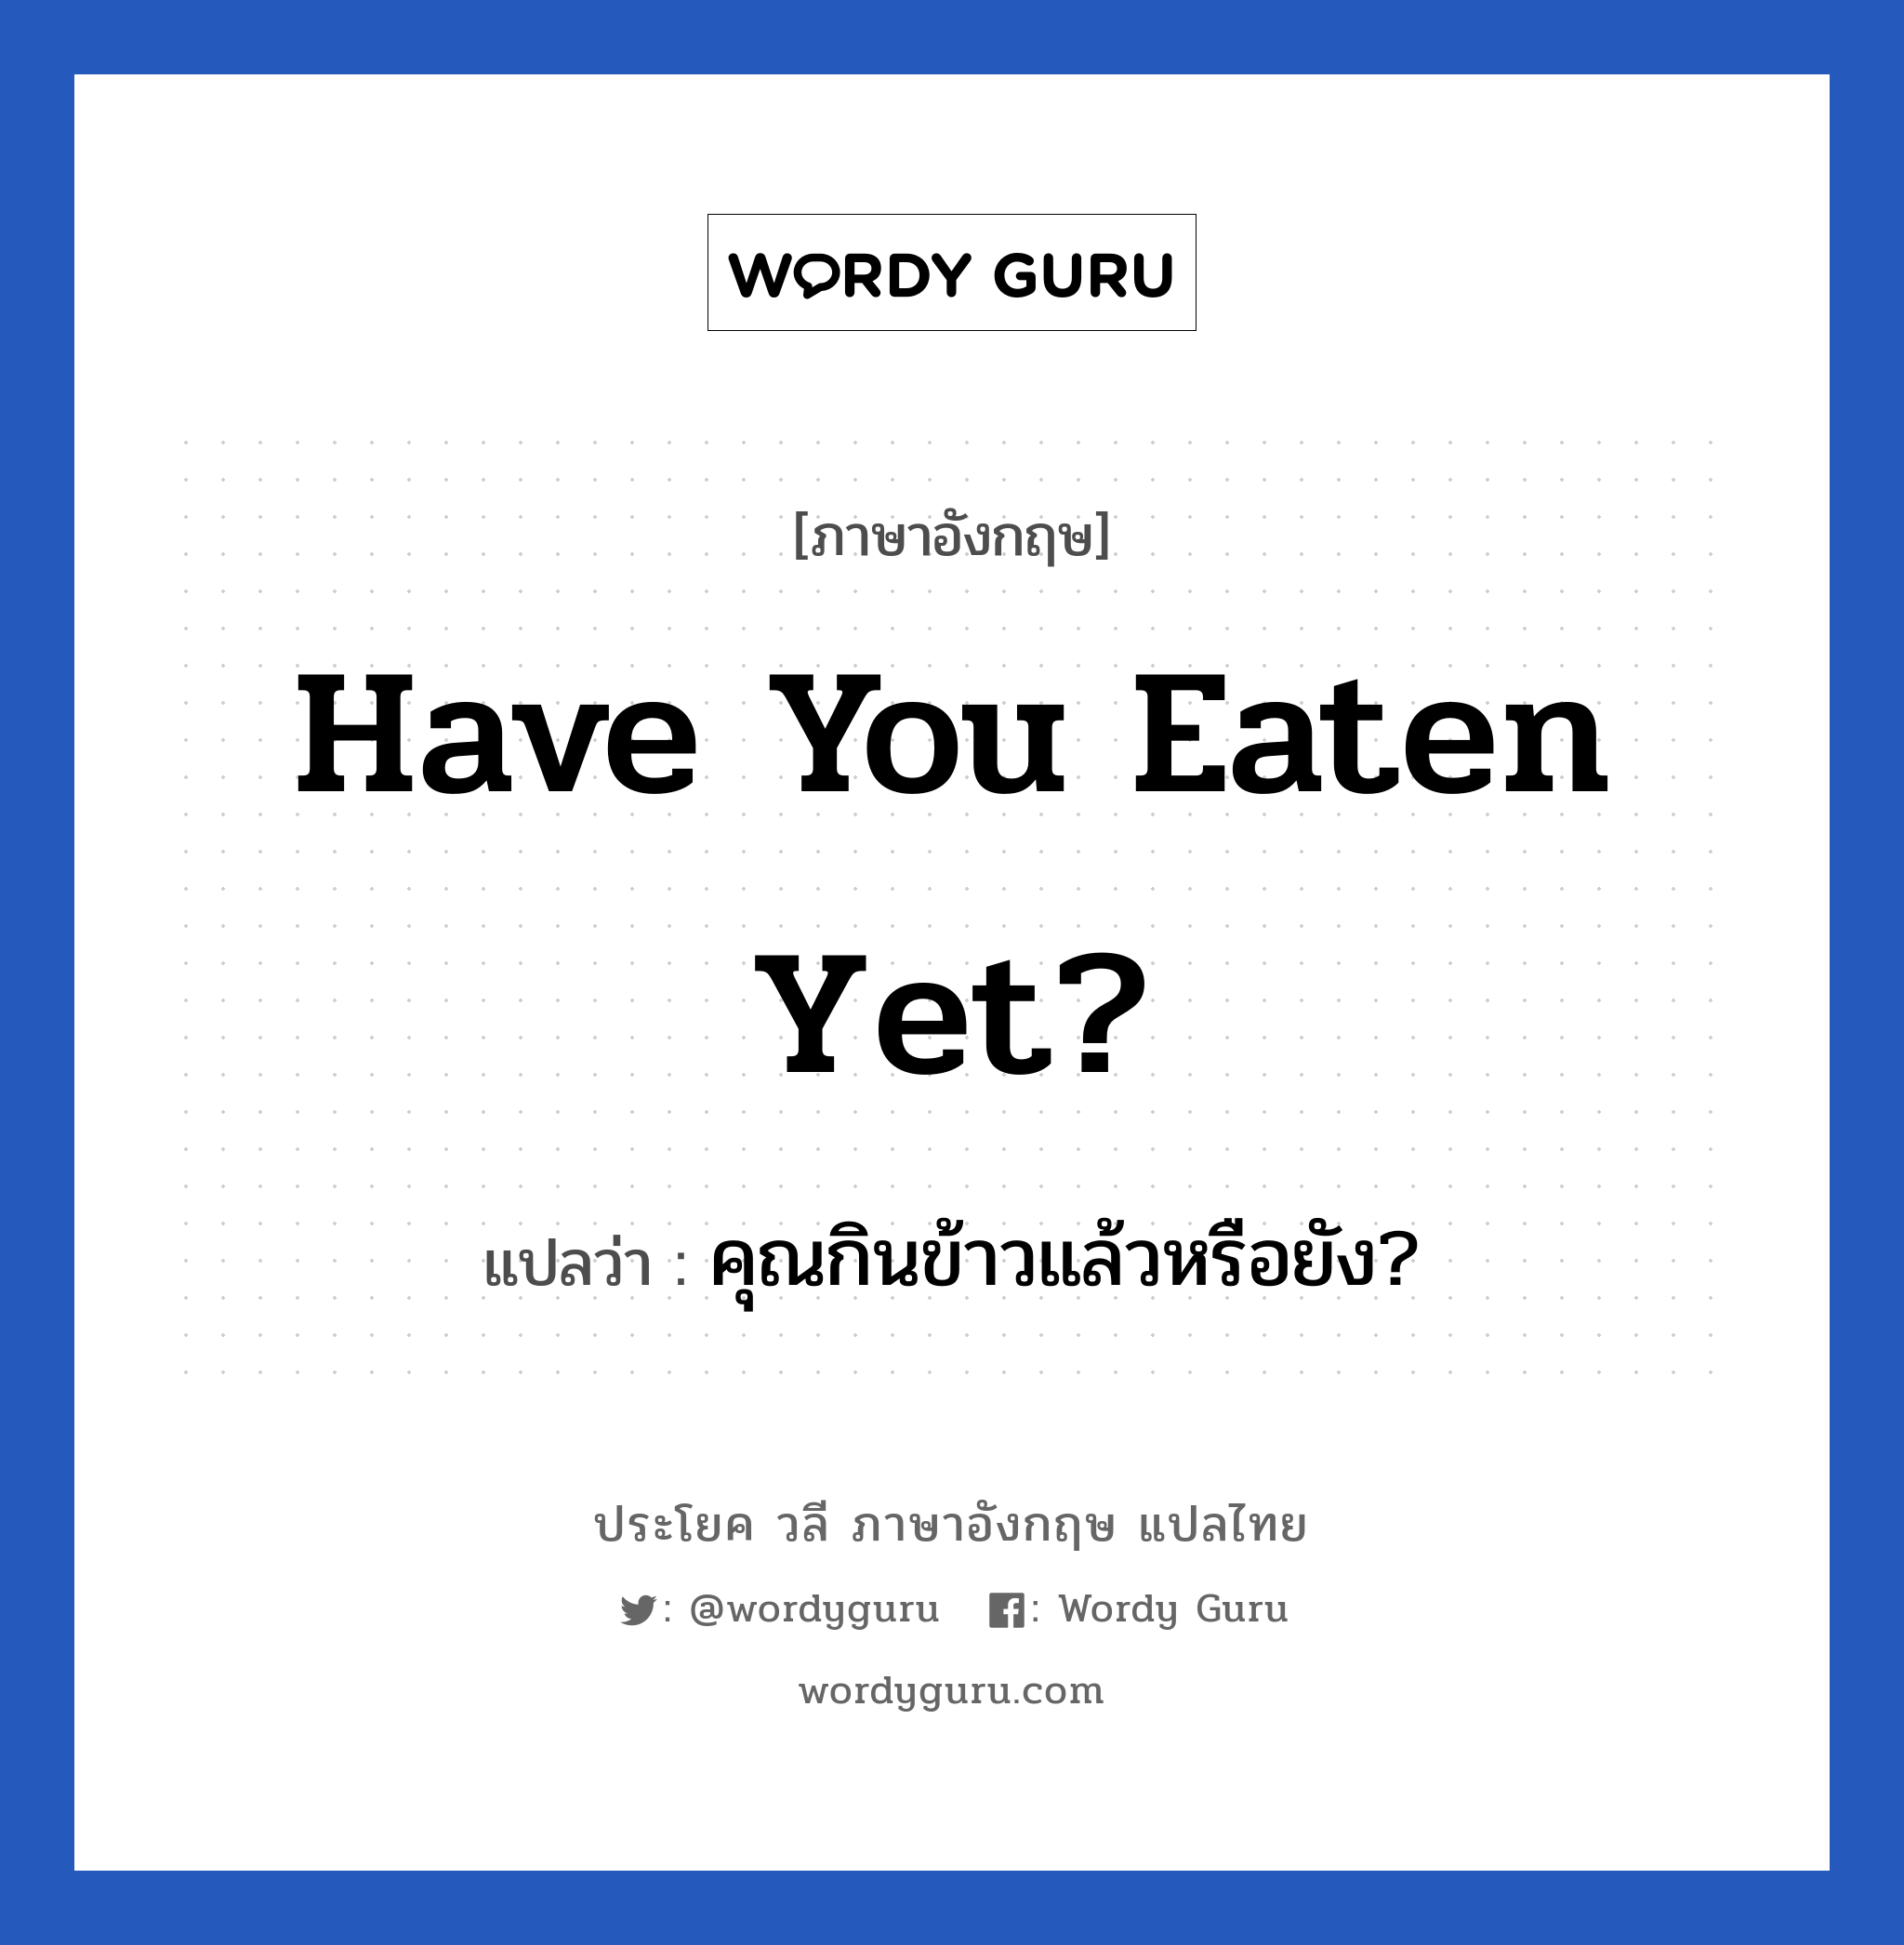 คุณกินข้าวแล้วหรือยัง? ภาษาอังกฤษ?, วลีภาษาอังกฤษ คุณกินข้าวแล้วหรือยัง? แปลว่า Have you eaten yet?